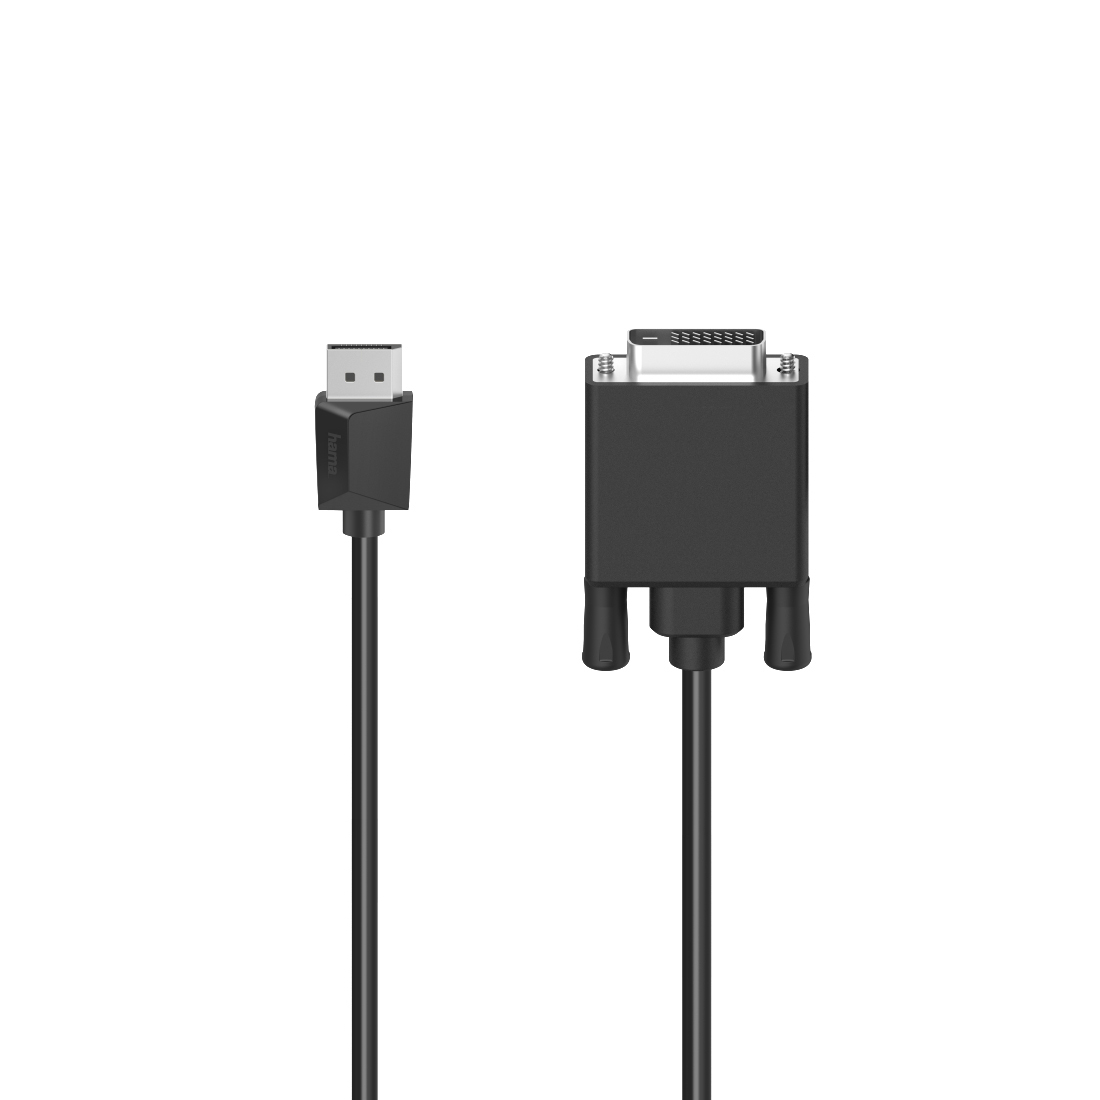 HAMA DisplayPort-Stecker auf DVI-Stecker, m 1,5 Kabel